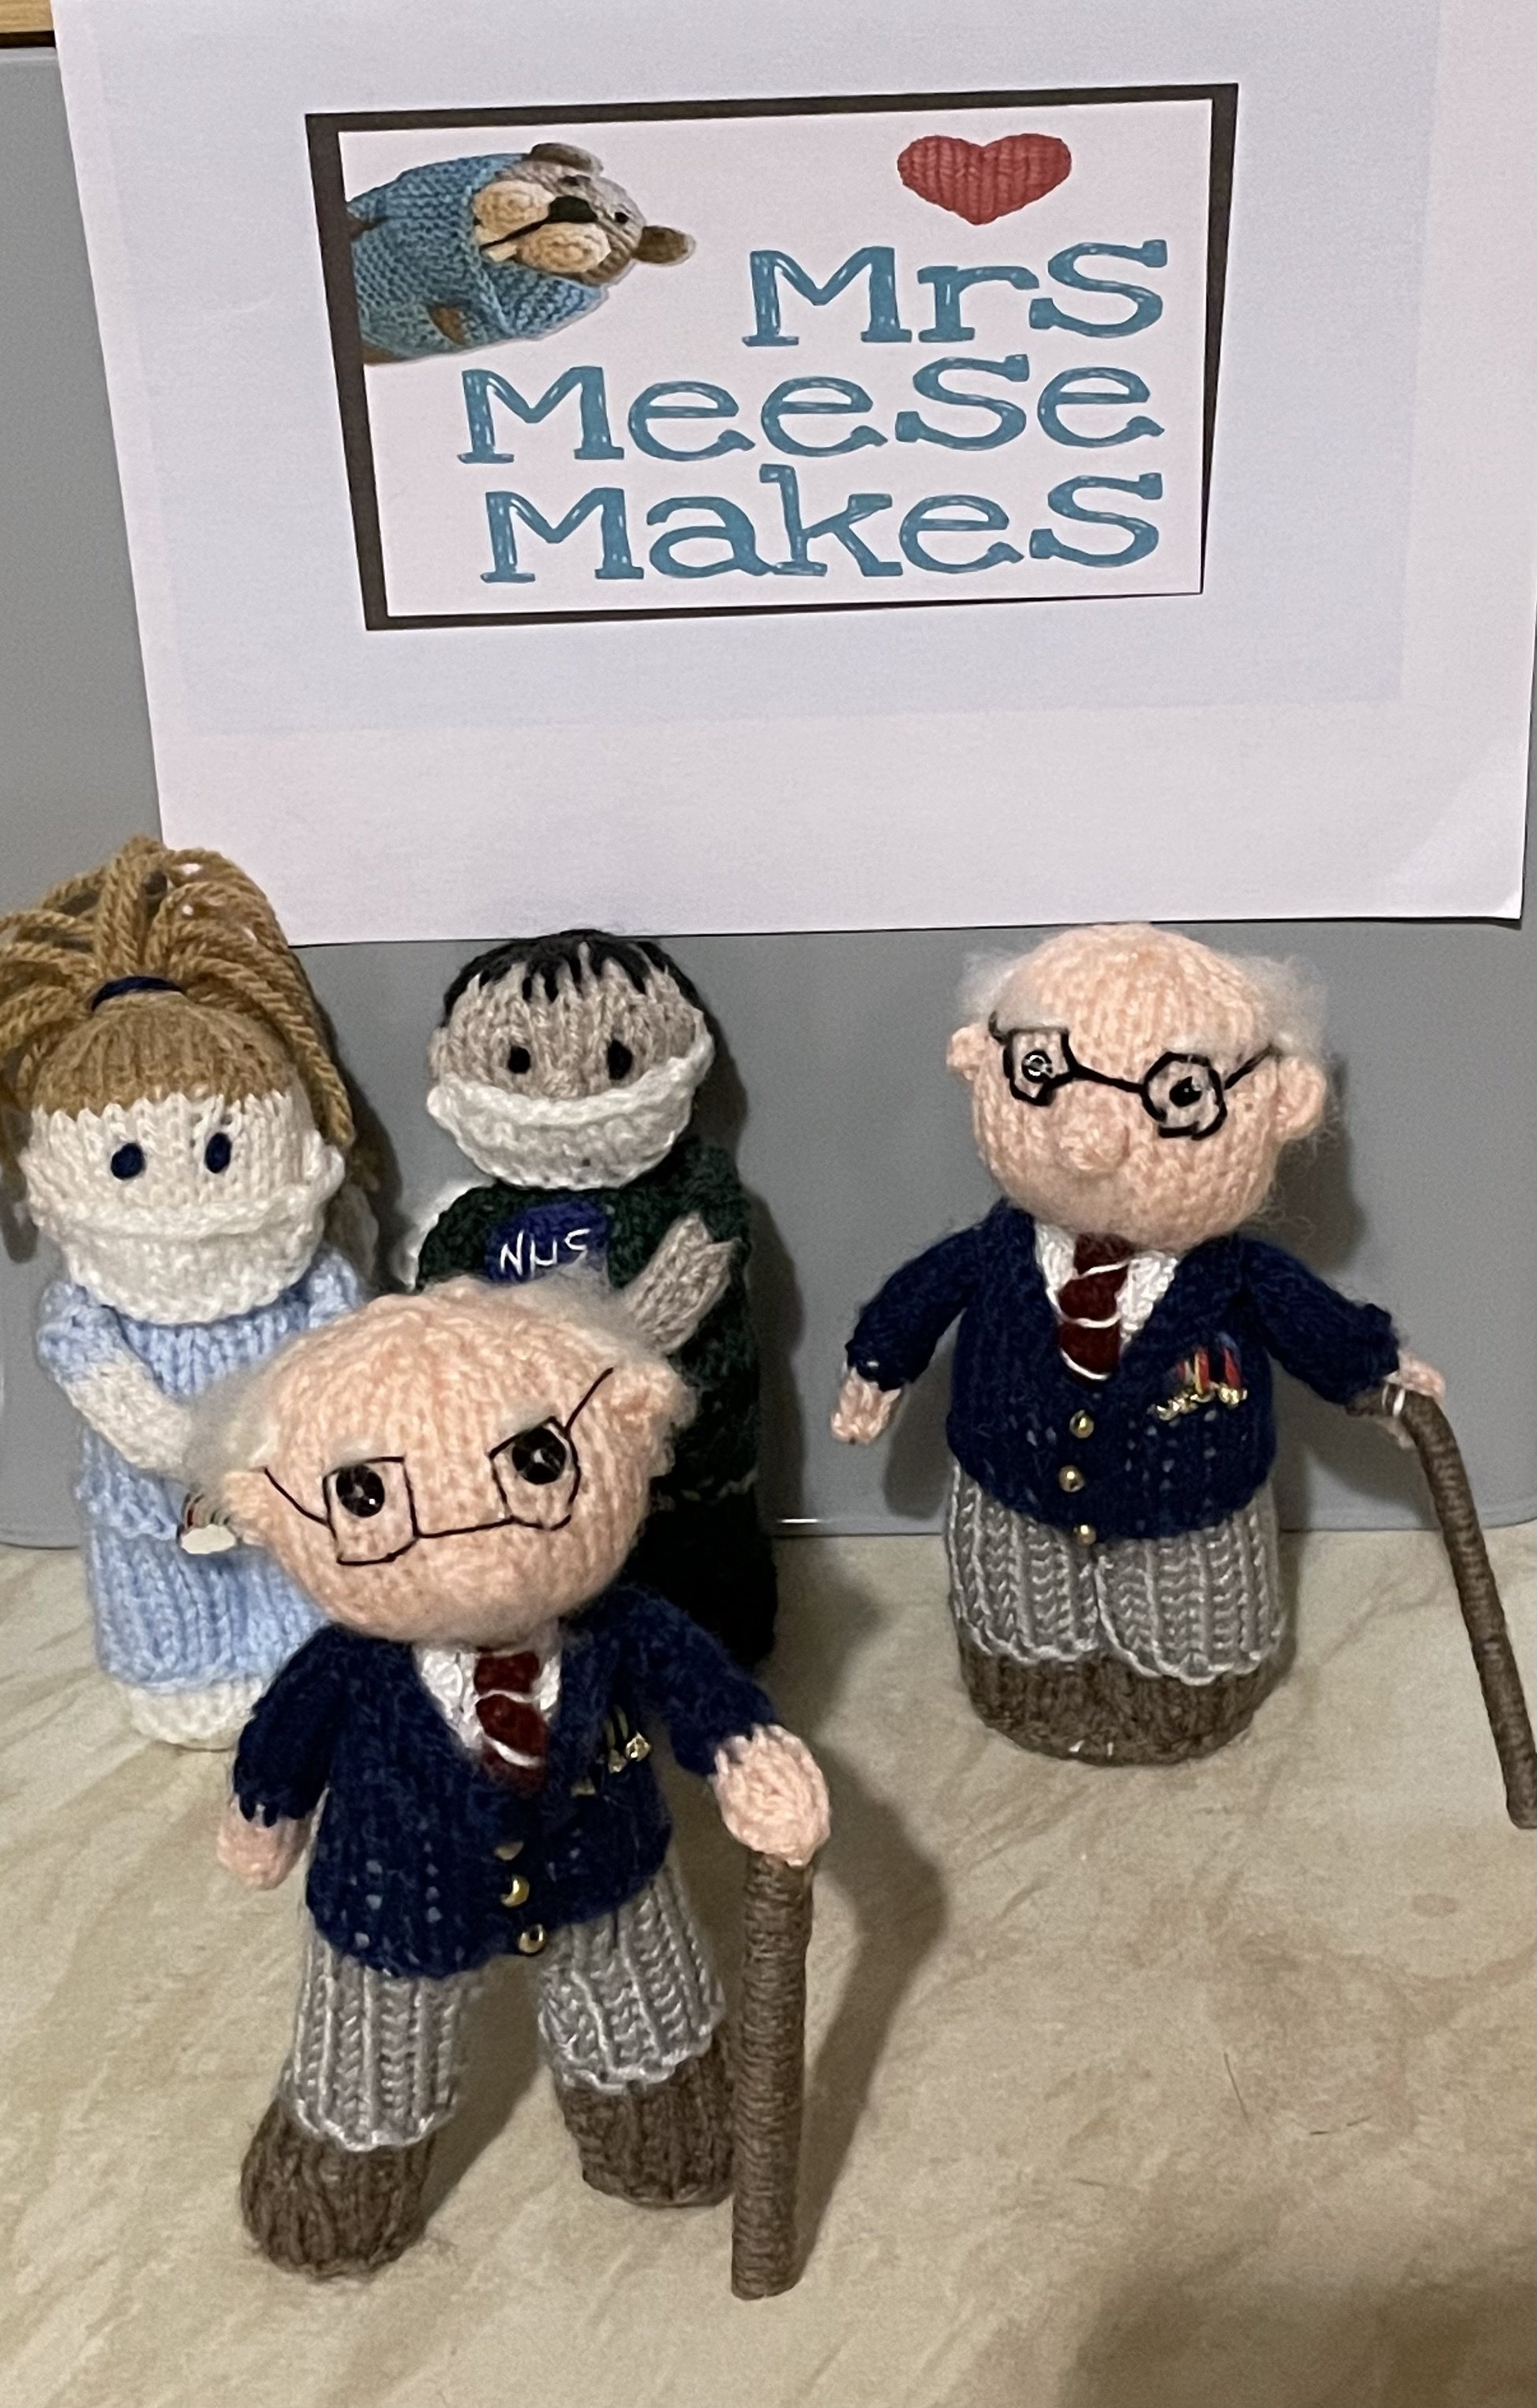 Captain Tom Moore hand knitted mini figure Keepsake pocket doll Own design 